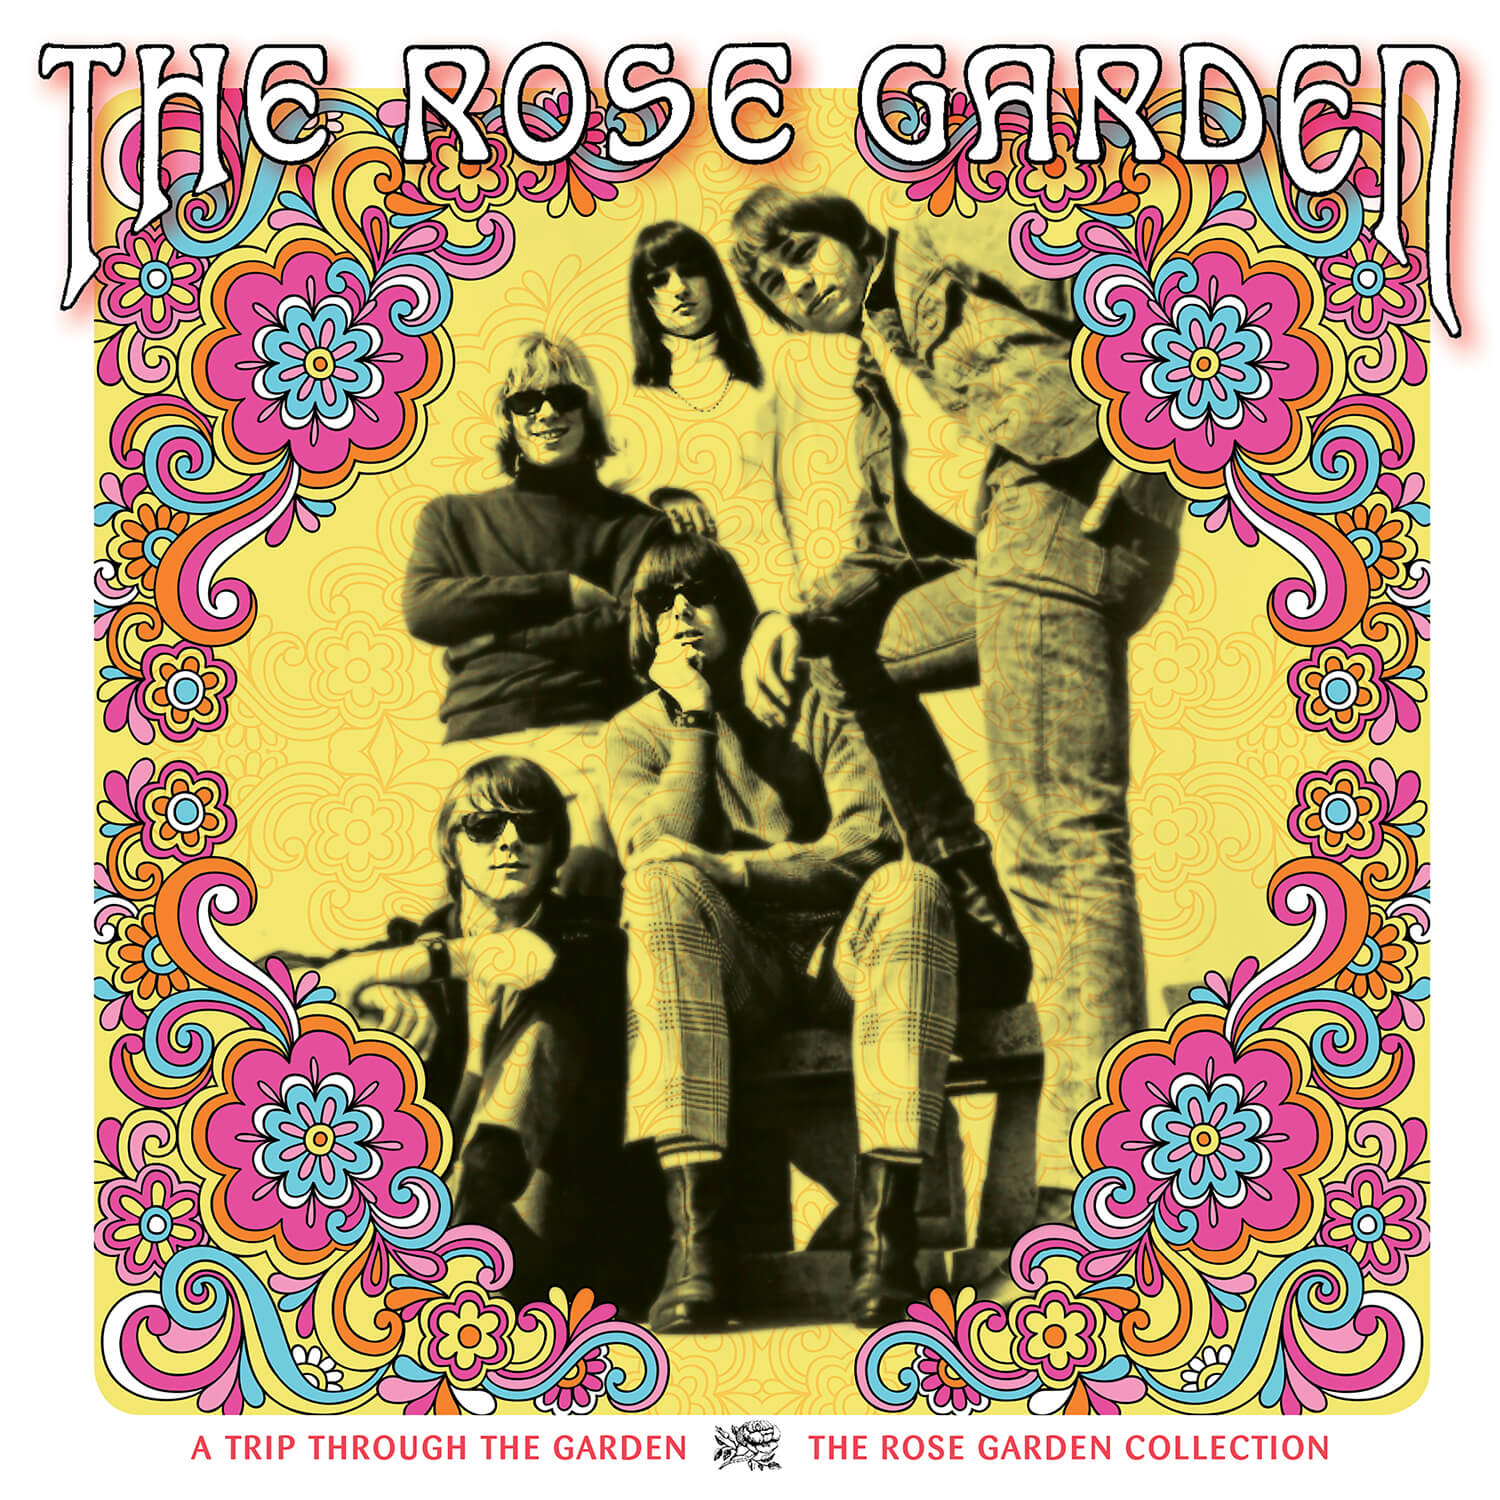 A Trip Through The Garden: The Rose Garden Collection